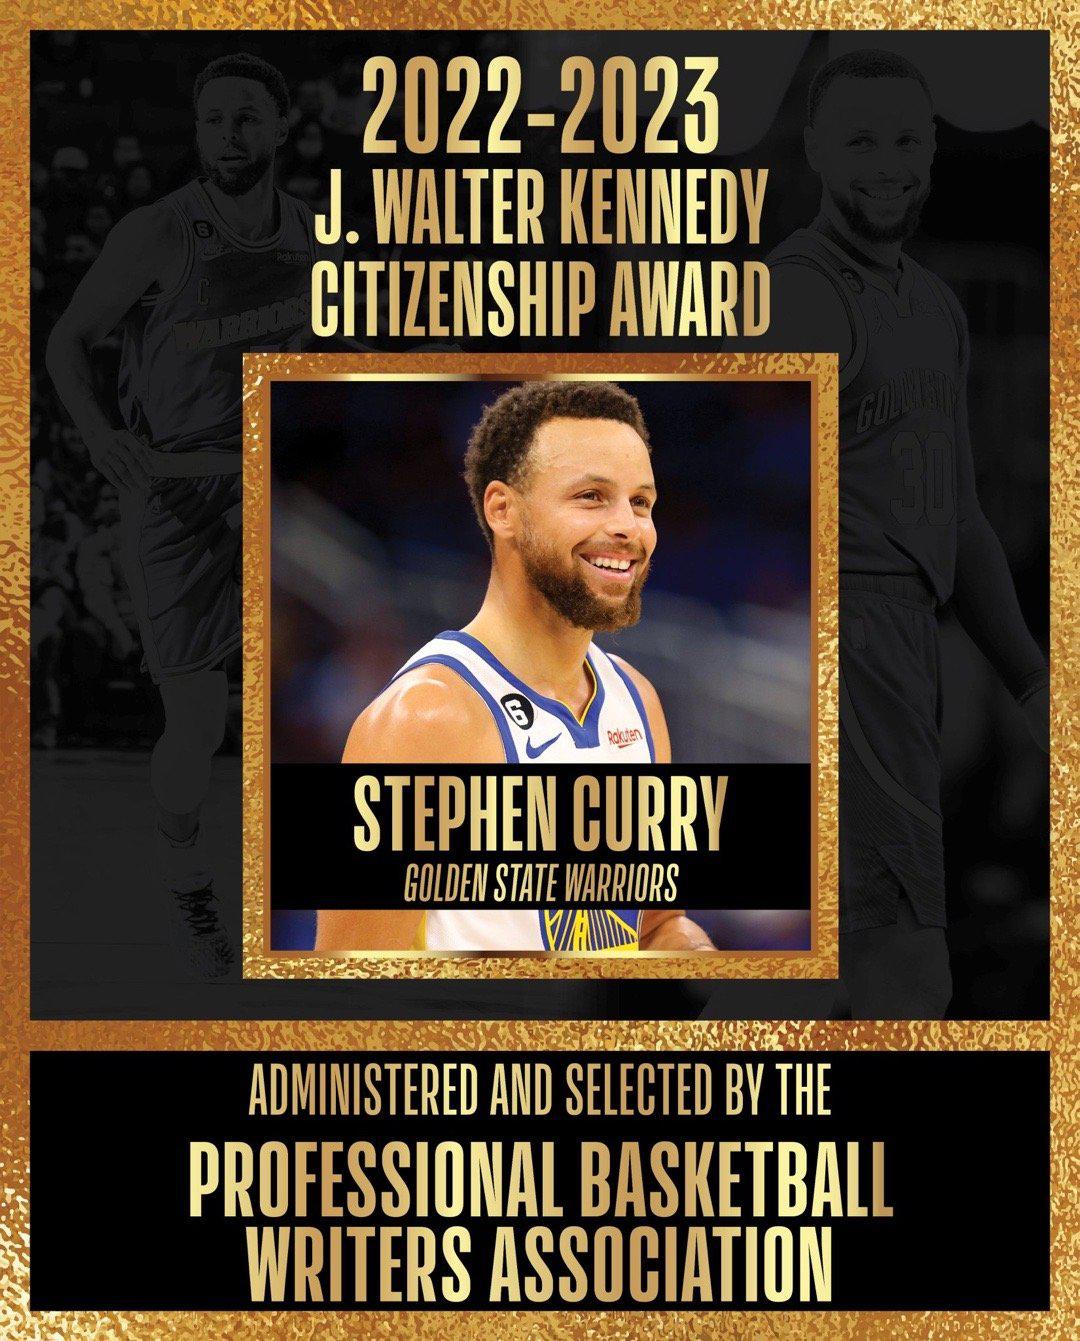 斯蒂芬库里被职业篮球作家协会授予2023年J.Walter Kennedy公民奖(1)